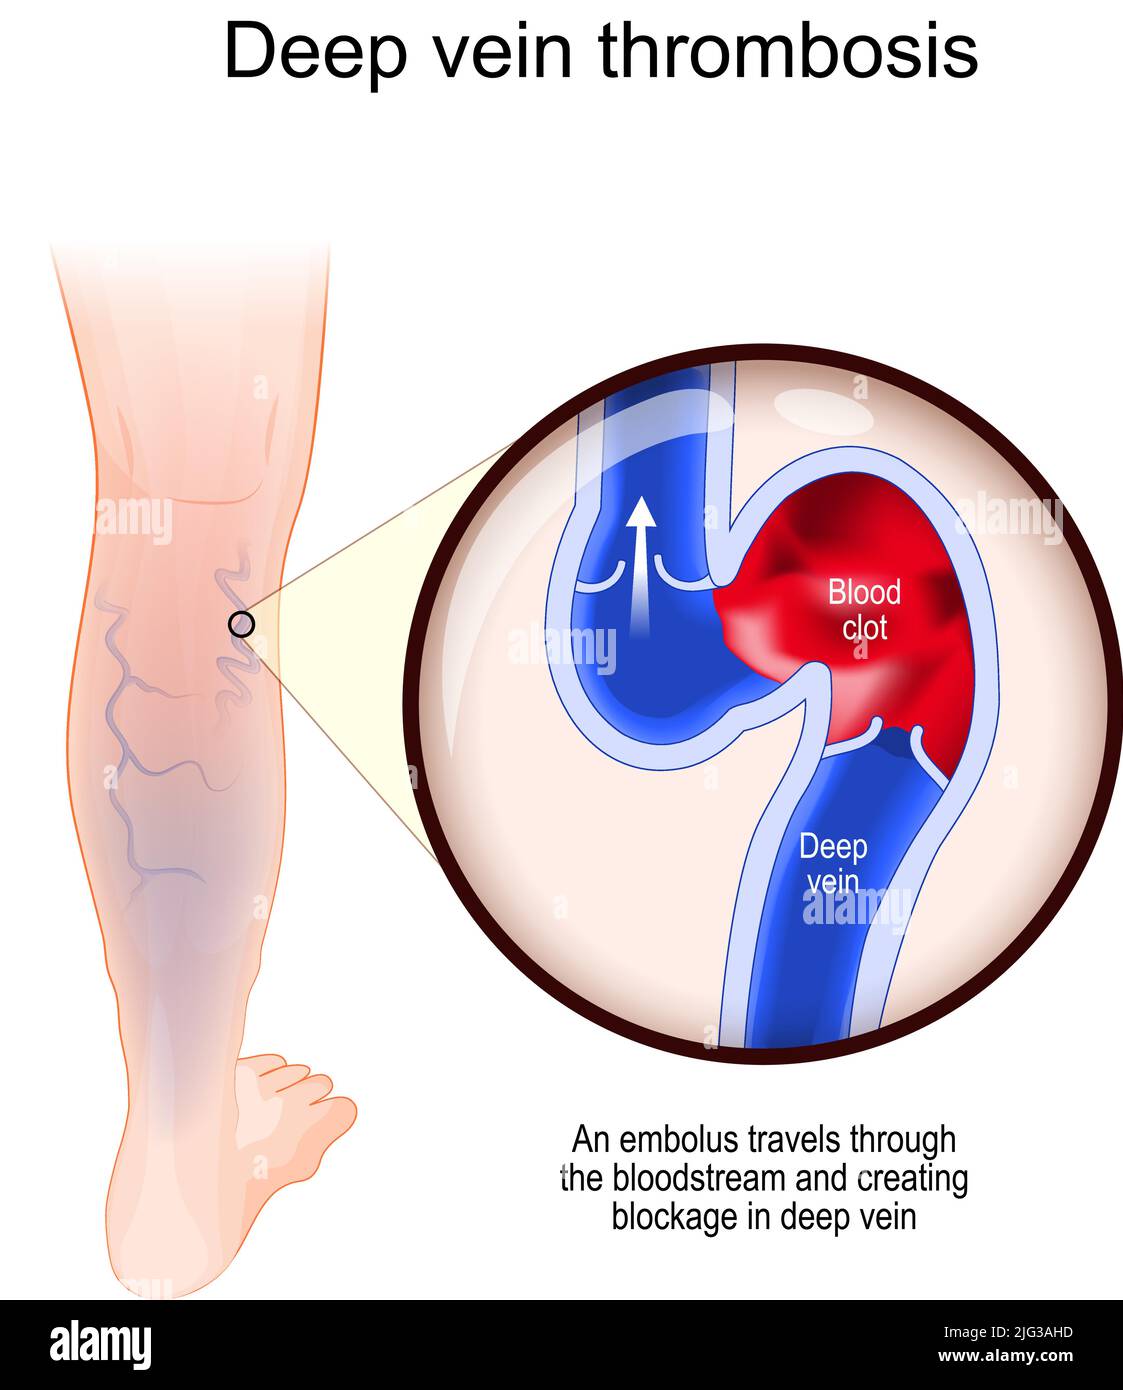 Thrombose veineuse profonde. Un embole traverse le flux sanguin et crée un bloc dans la veine profonde. Gros plan du vaisseau sanguin avec un caillot de sang. Coupe transversale Illustration de Vecteur